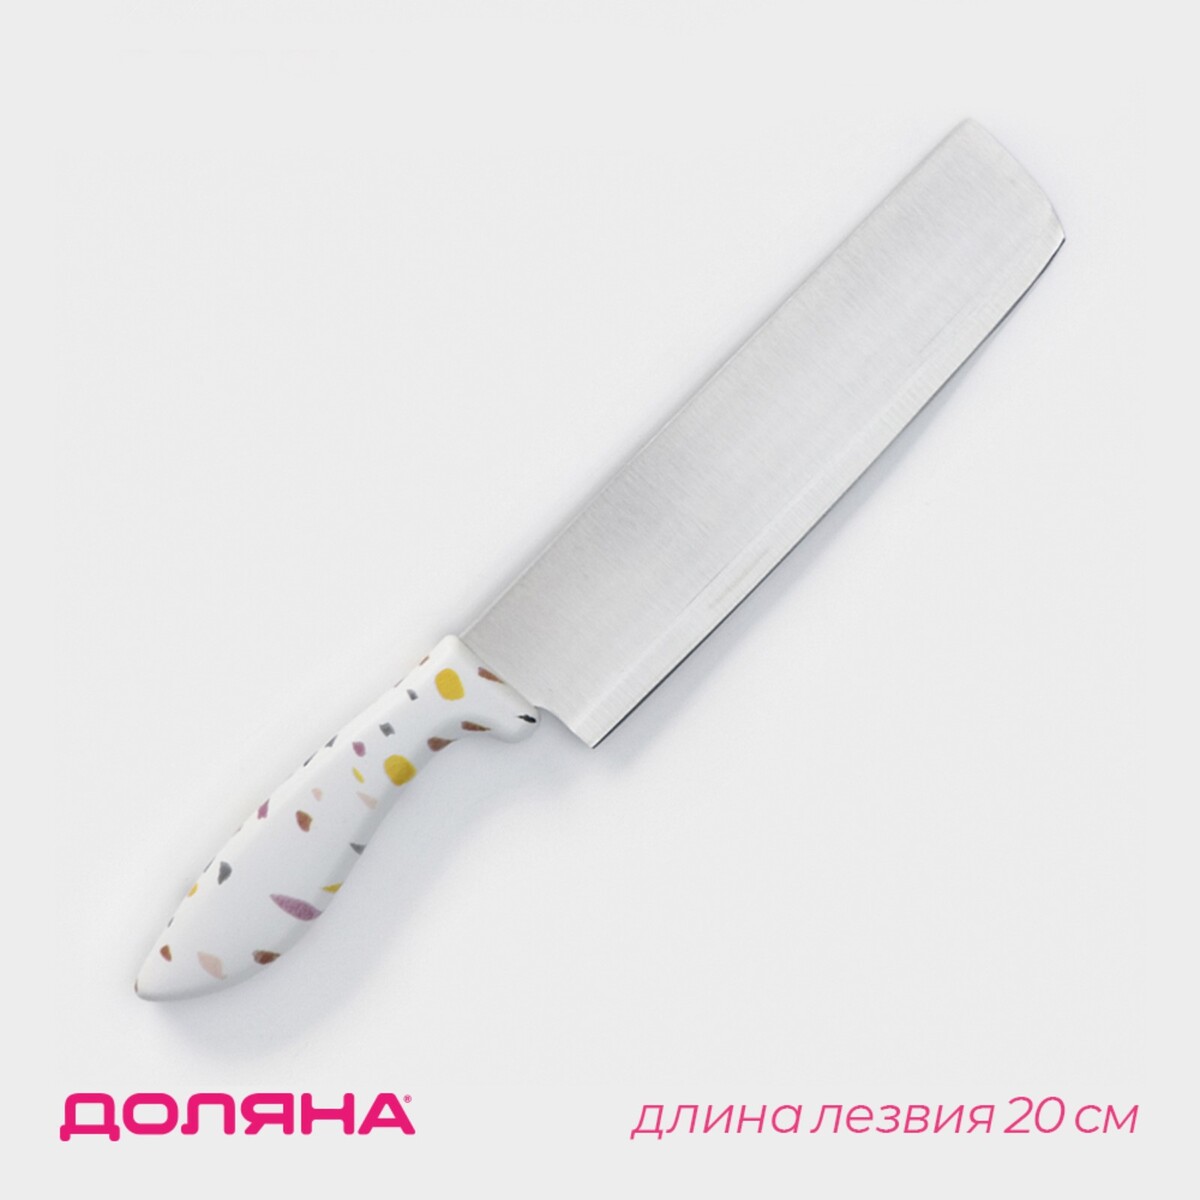 Нож - топорик кухонный доляна sparkle, лезвие 20 см, цвет белый нож пчак кухонный wild kitchen сталь 95×18 лезвие 16 5 см